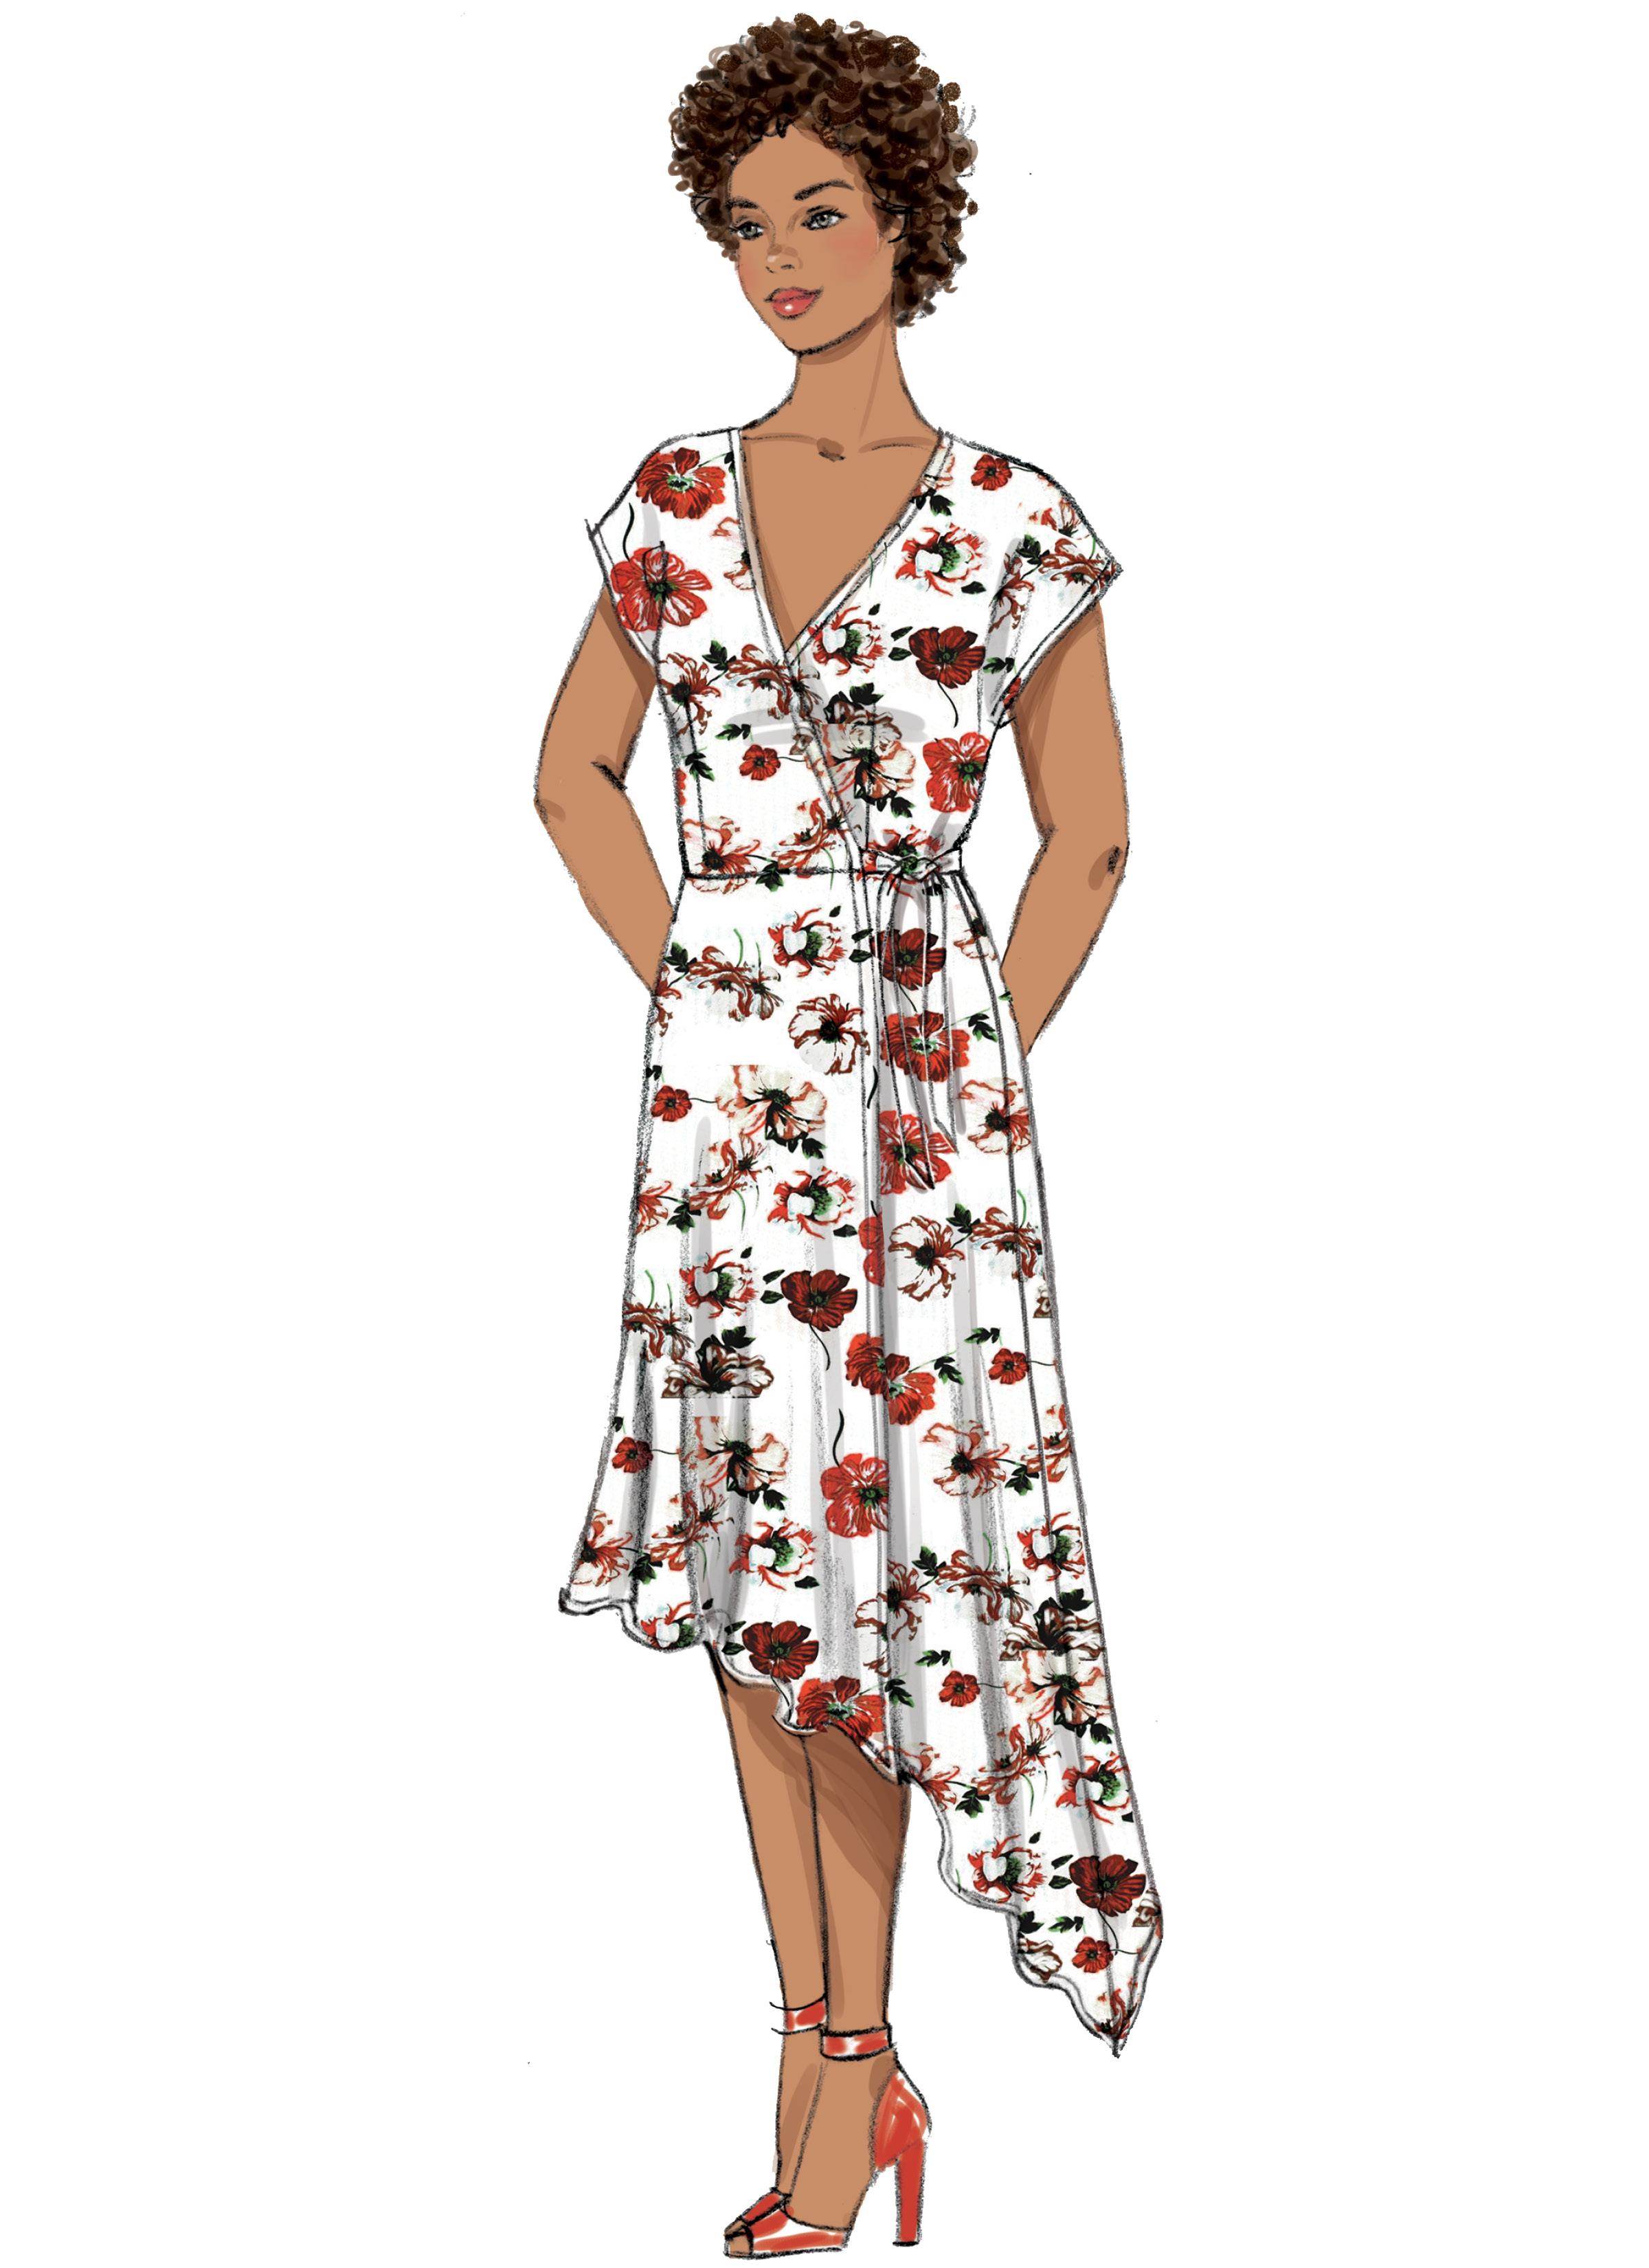 Butterick B6675 Misses'/Women's Dress